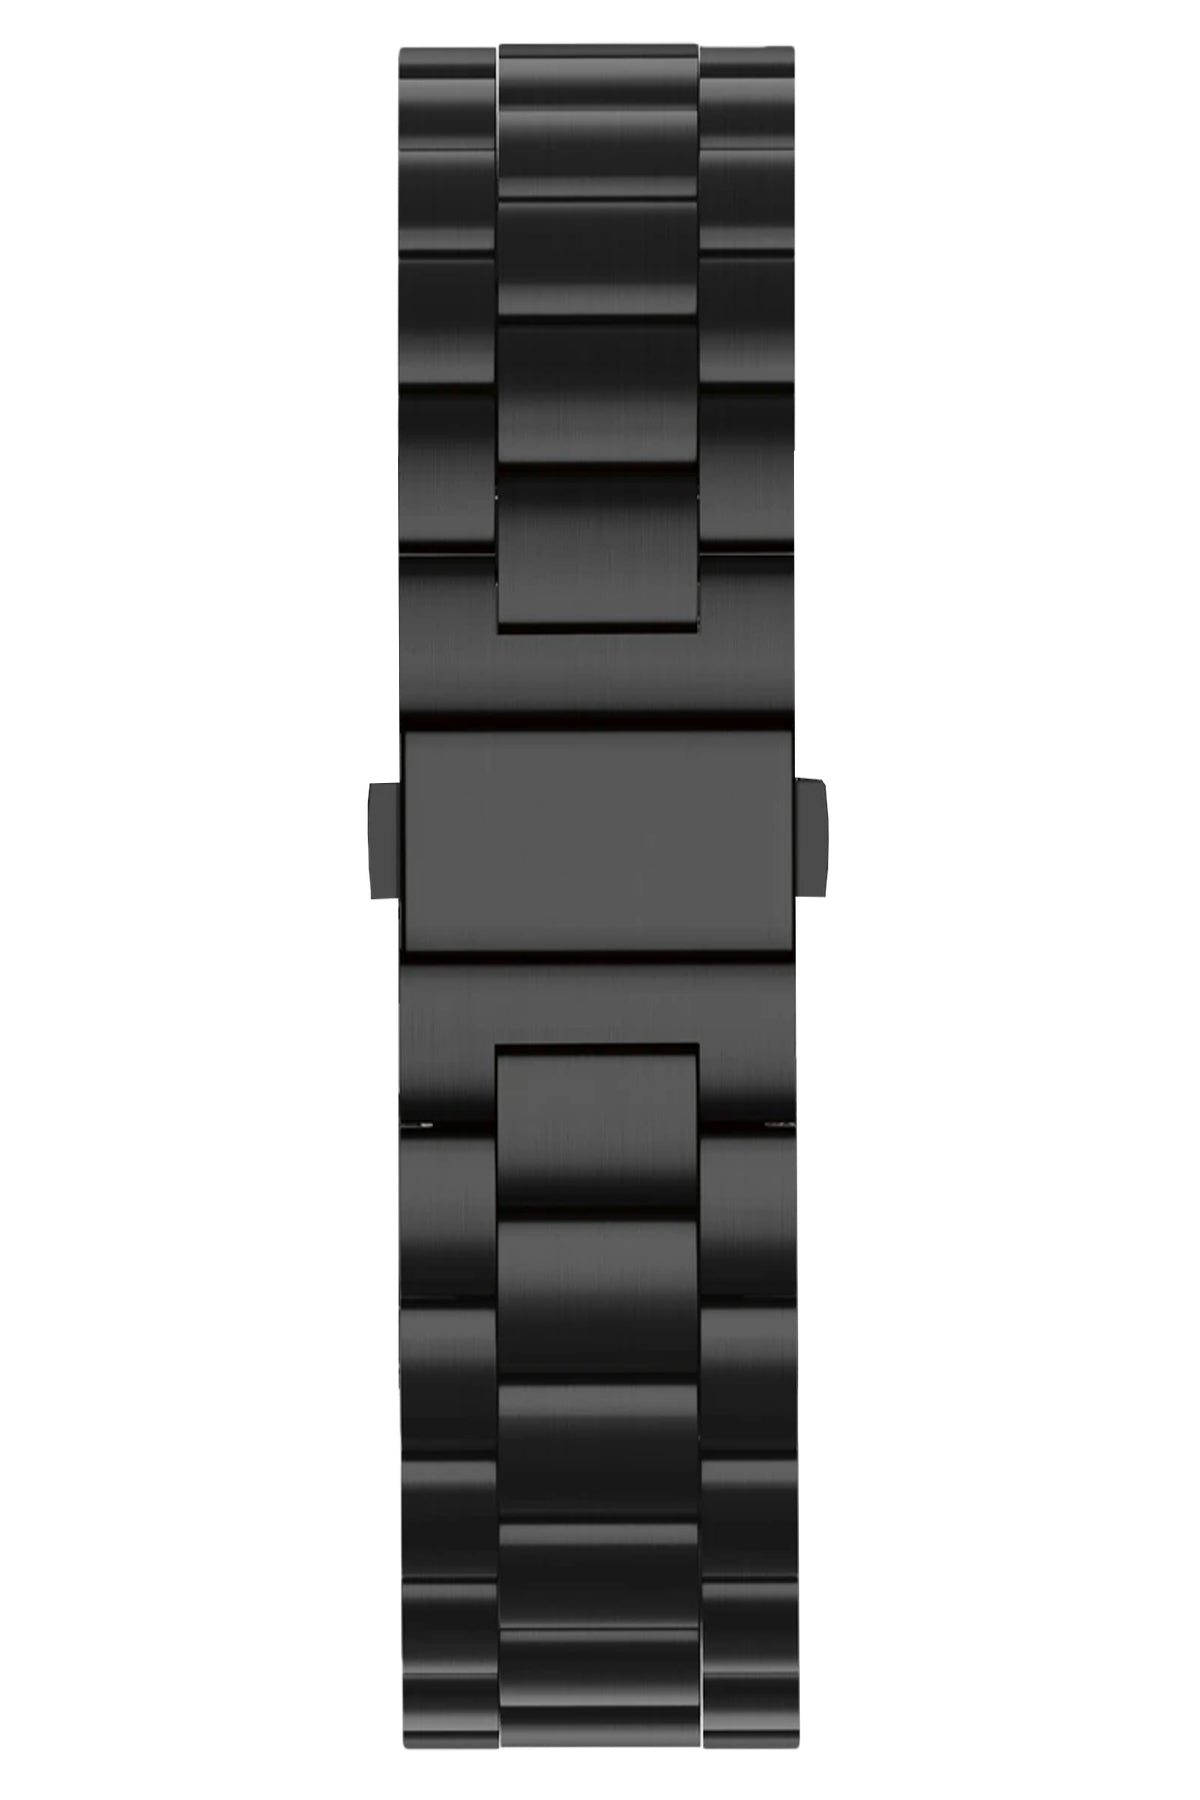 Apple Watch Uyumlu Üç Bakla Çelik Loop Kordon Siyah